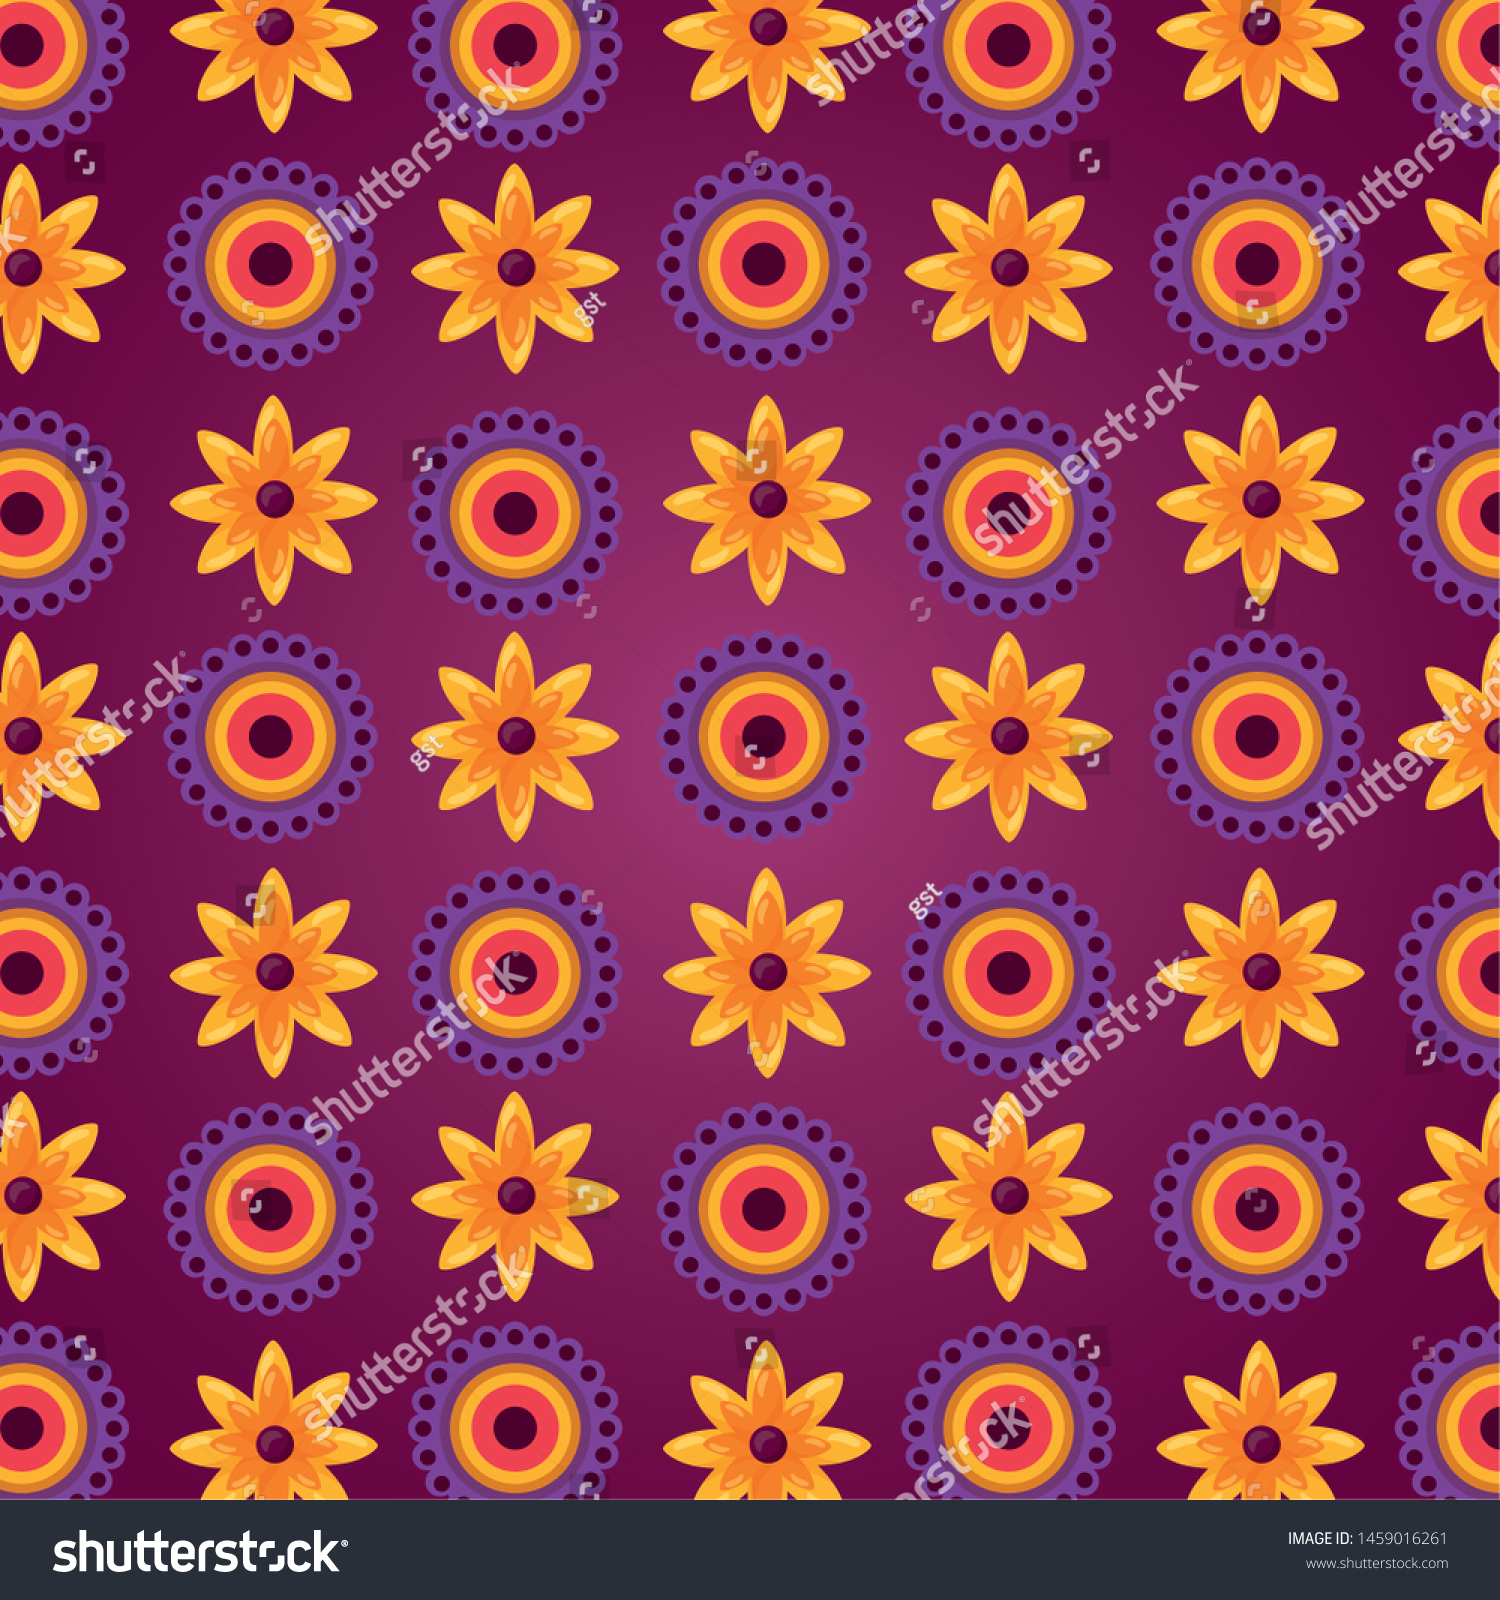 raksha bandhan flowers decoration background vector illustration #1459016261